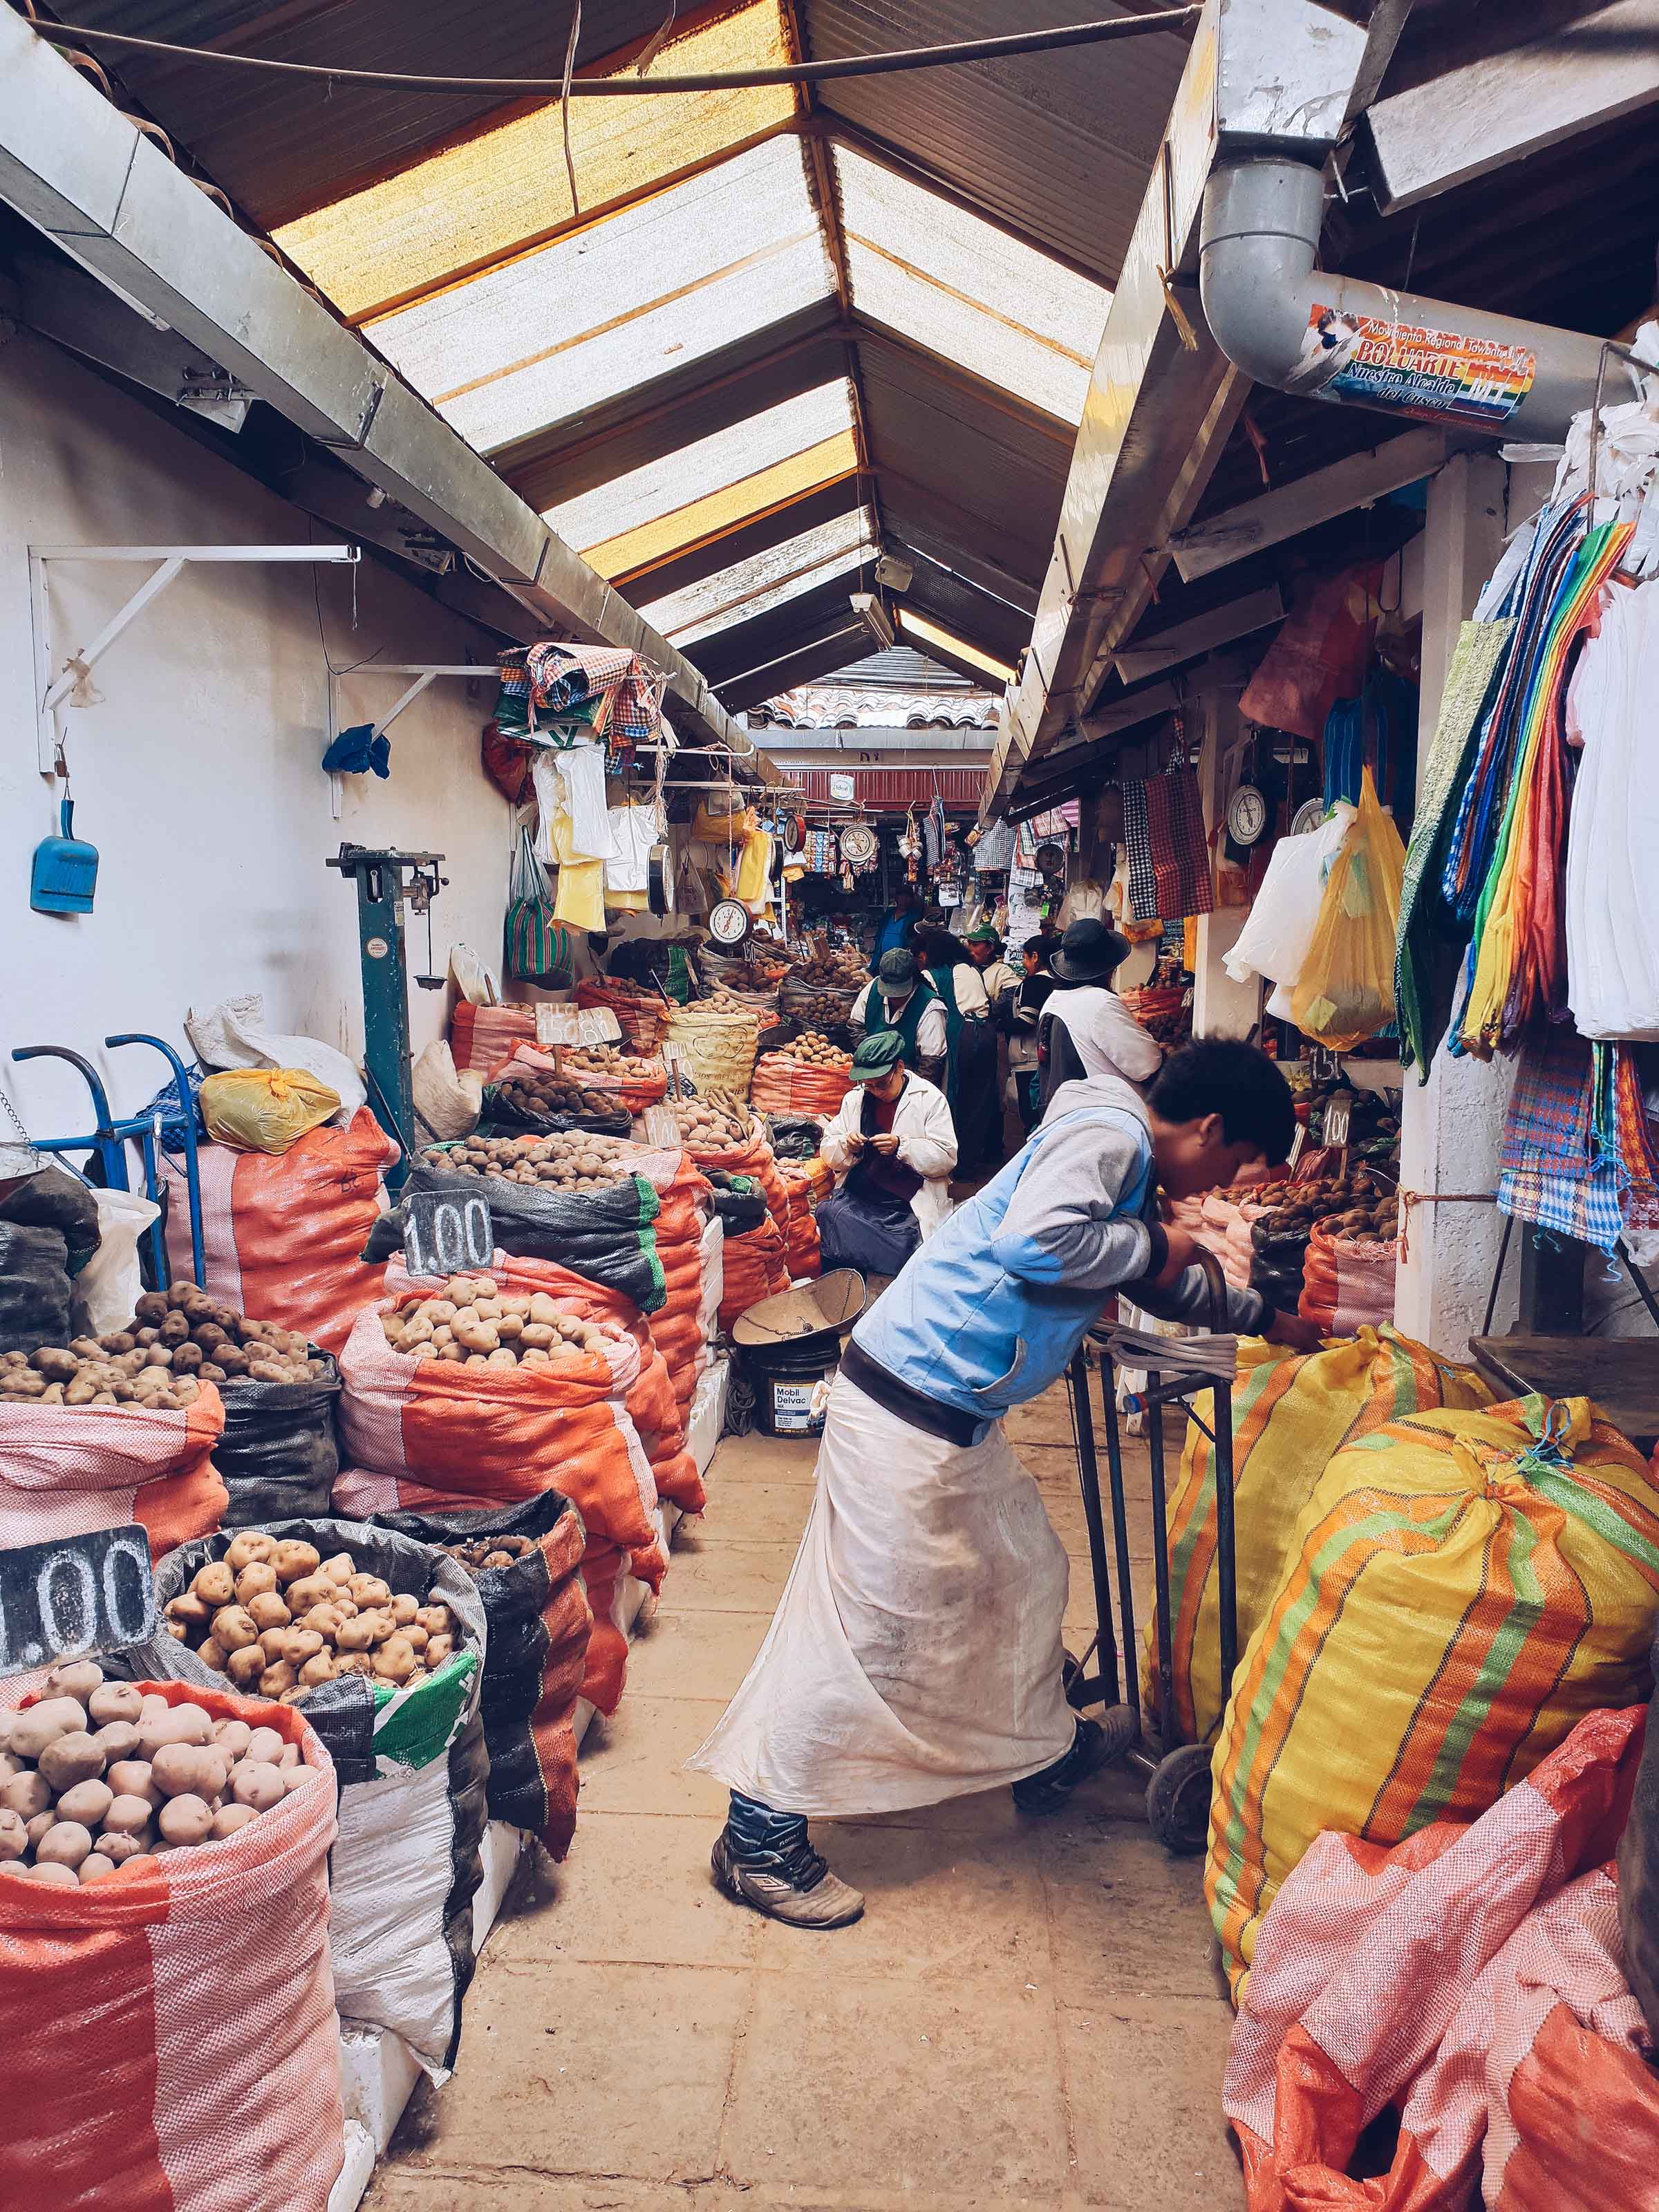 Welche Märkte sollte man in Cusco besuchen